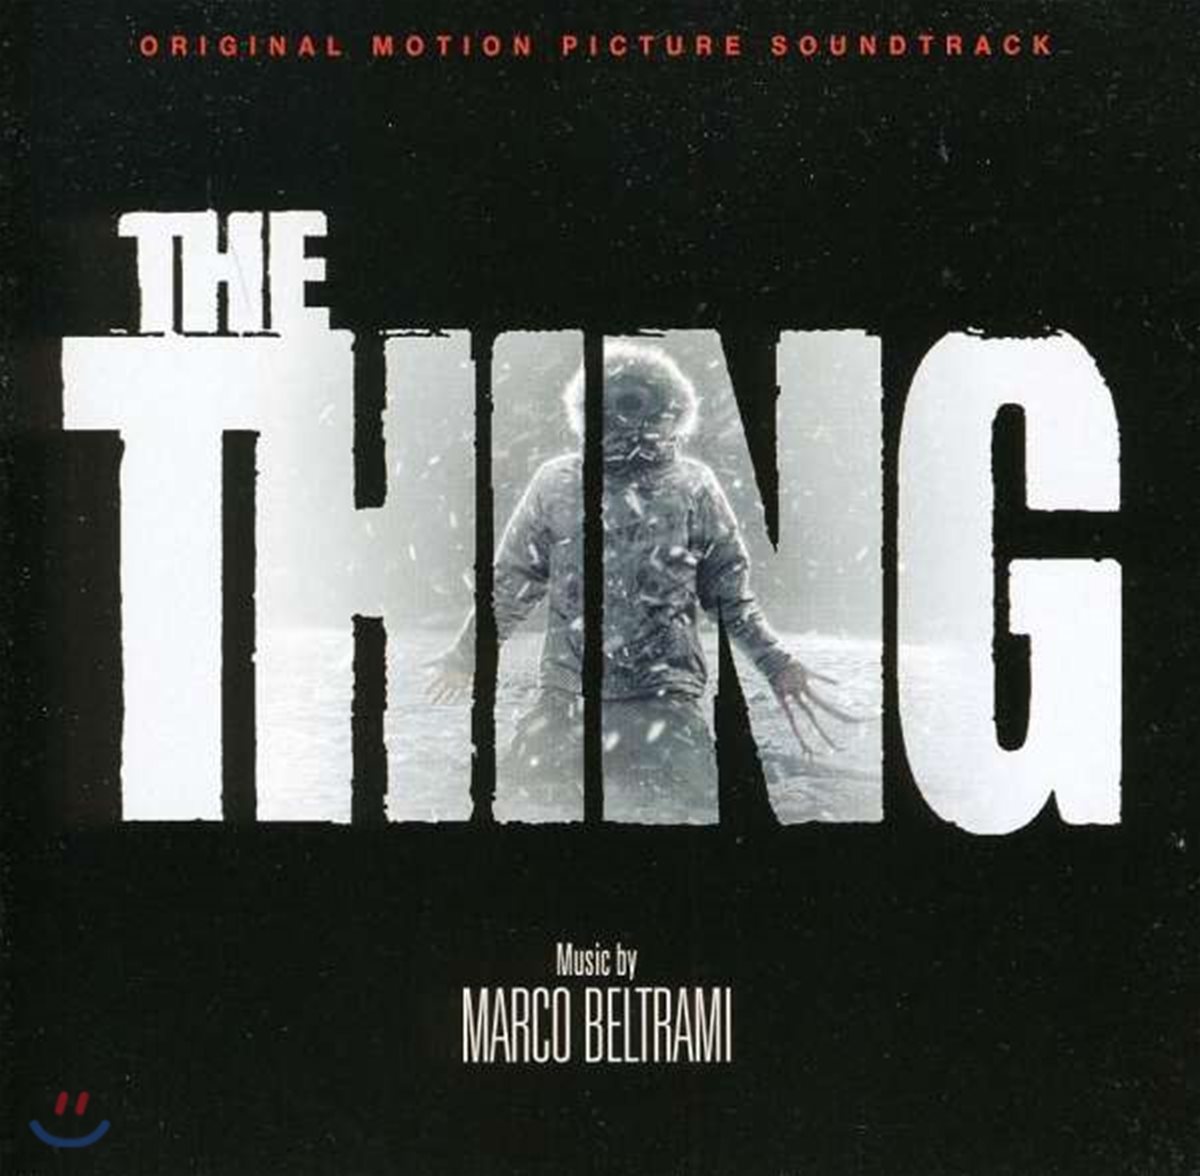 더 씽: 괴물 영화음악 (The Thing OST by Marco Beltrami)